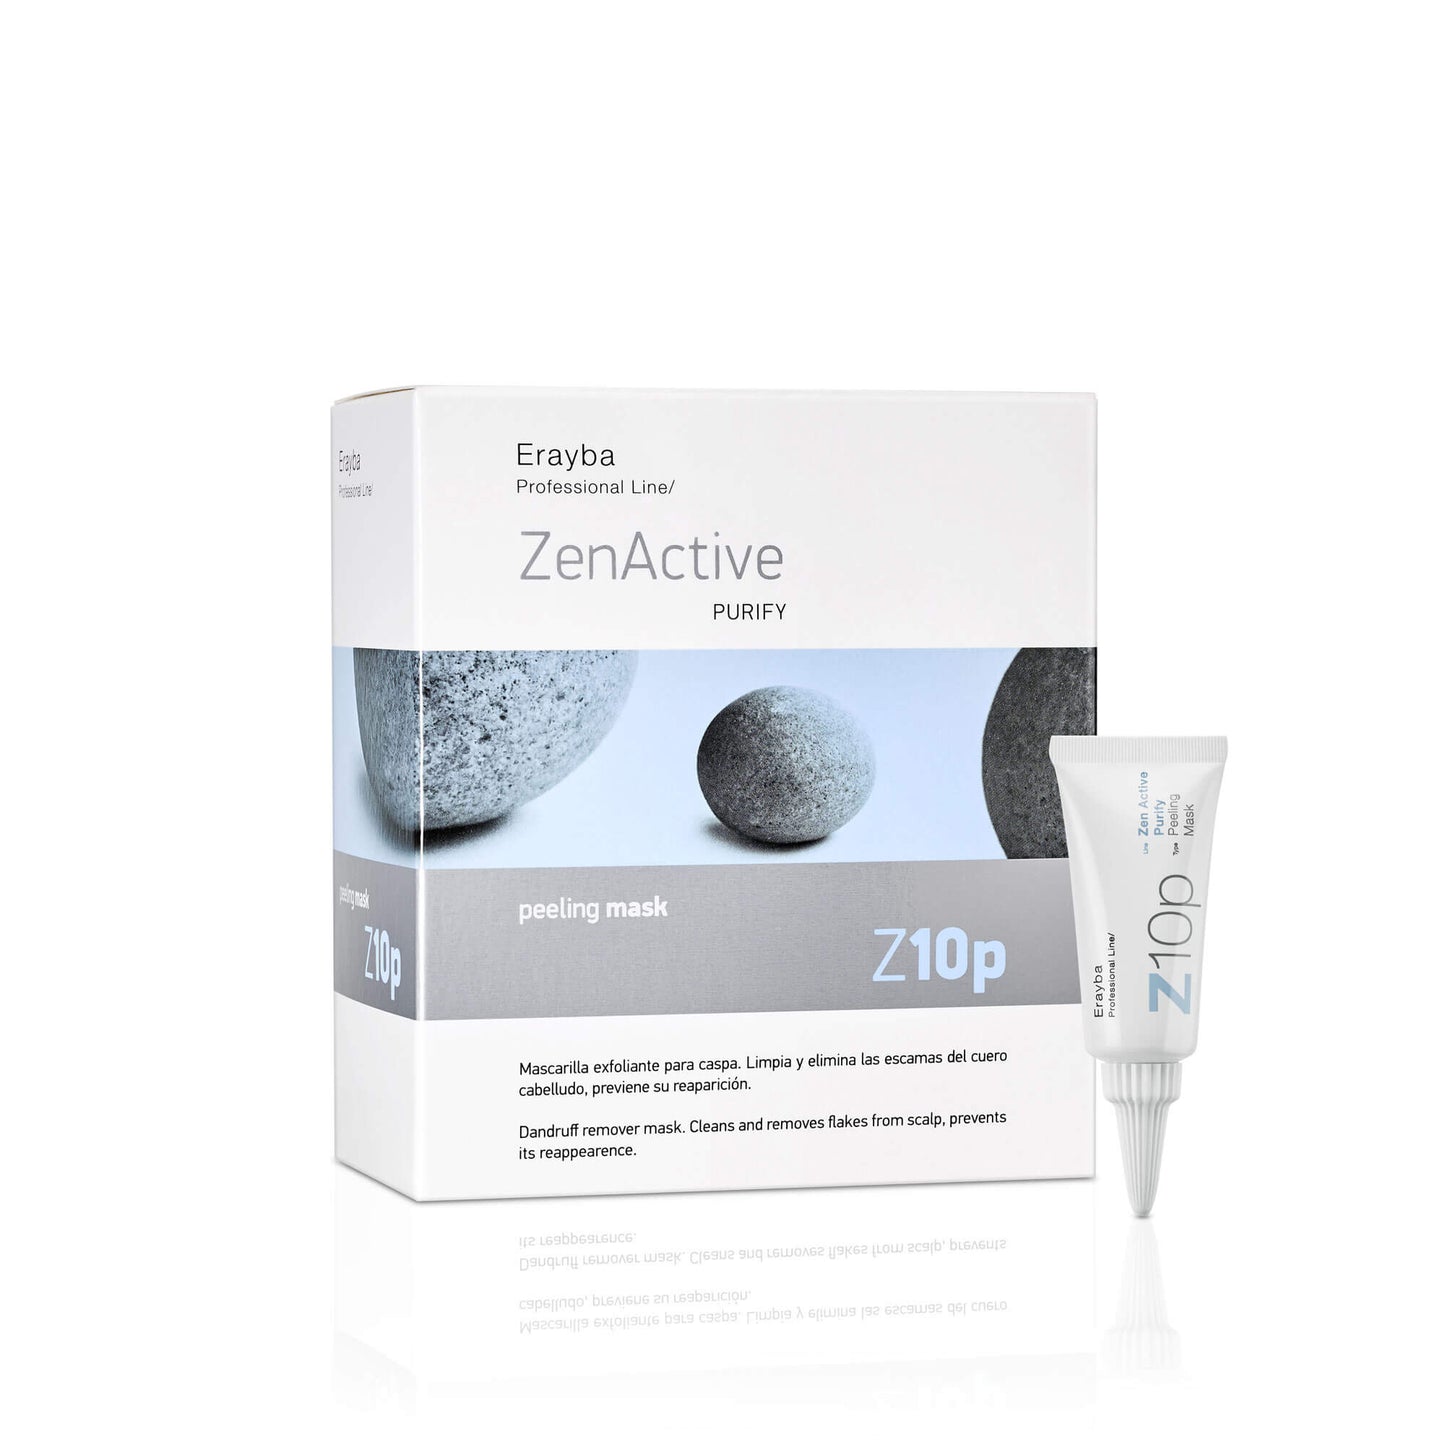 Zen Active Z10p peeling mask